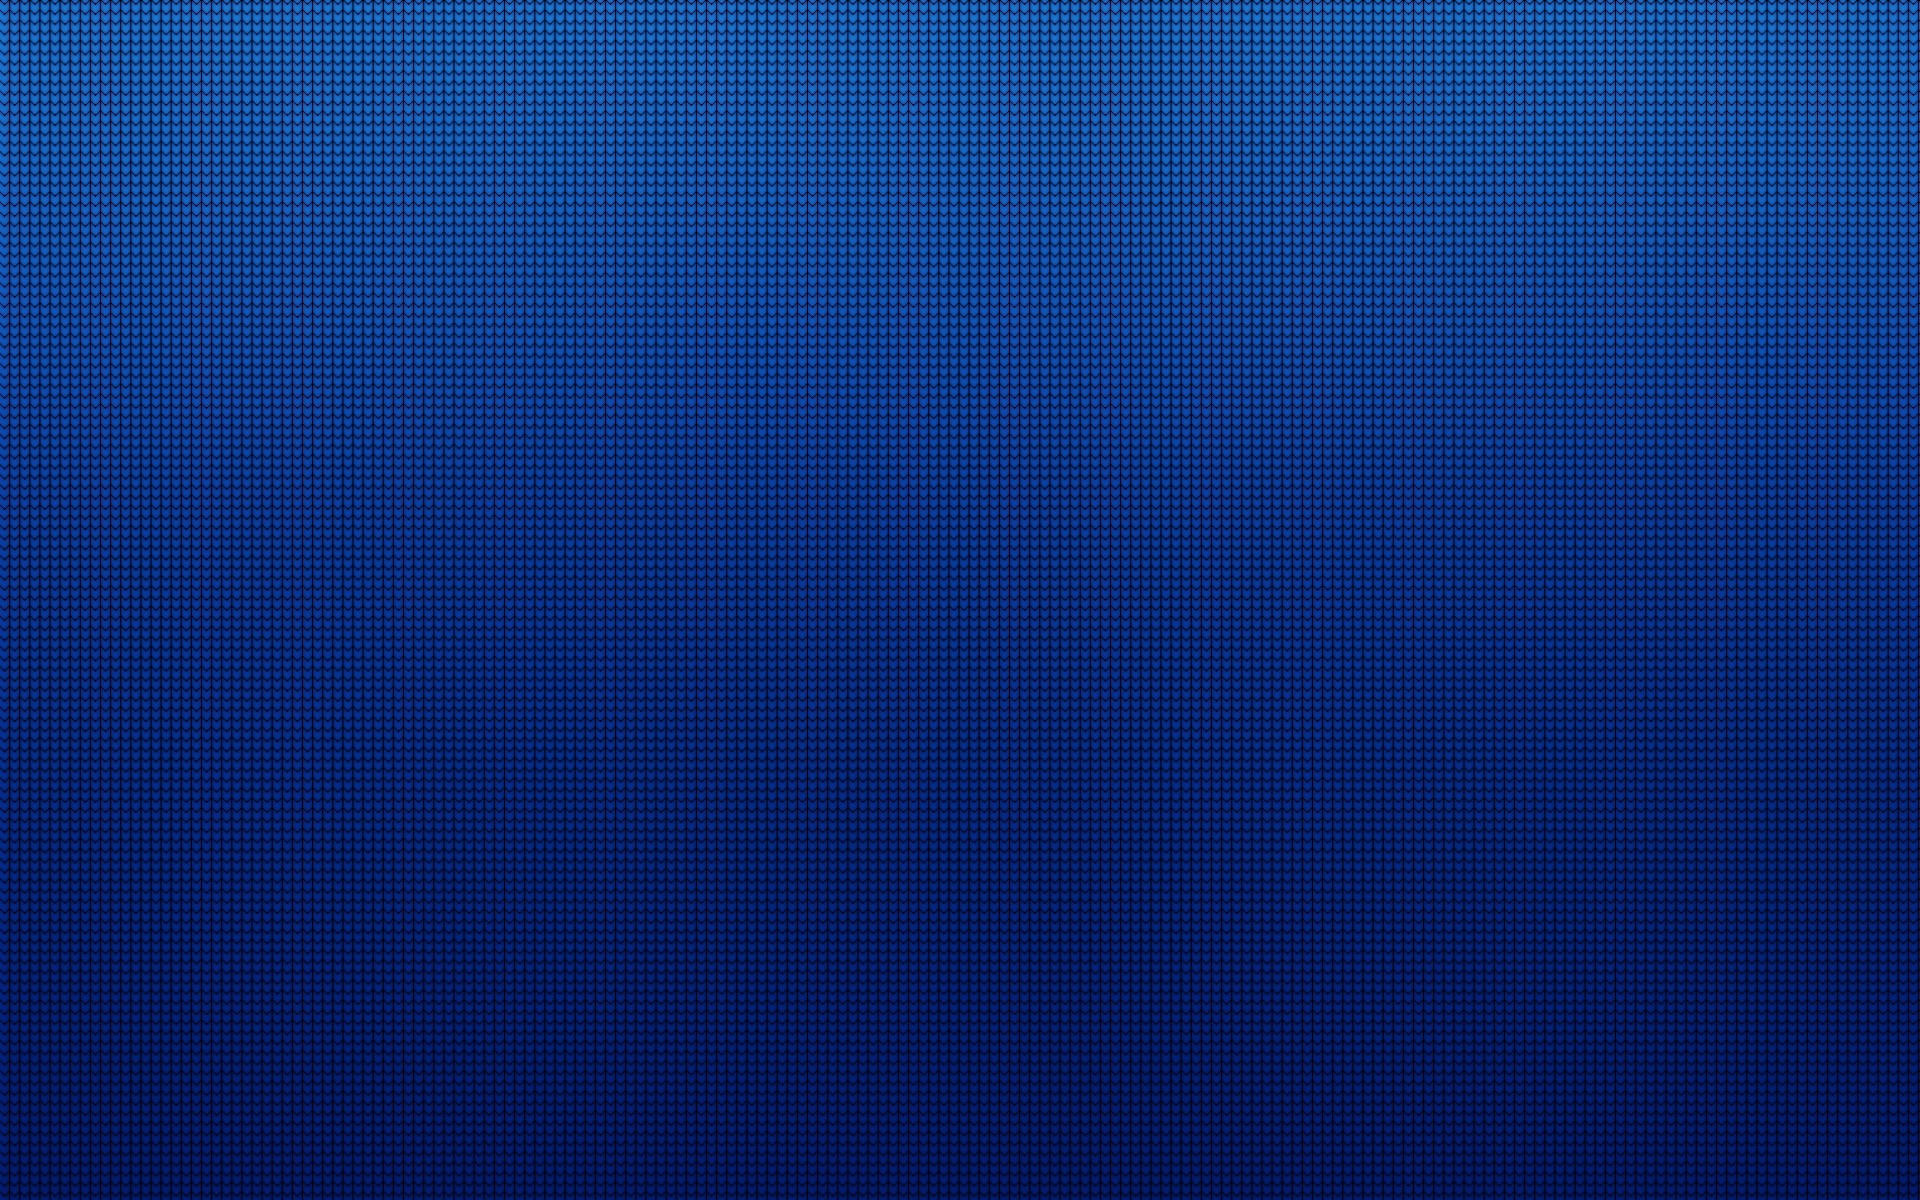 Dark blue checks web background